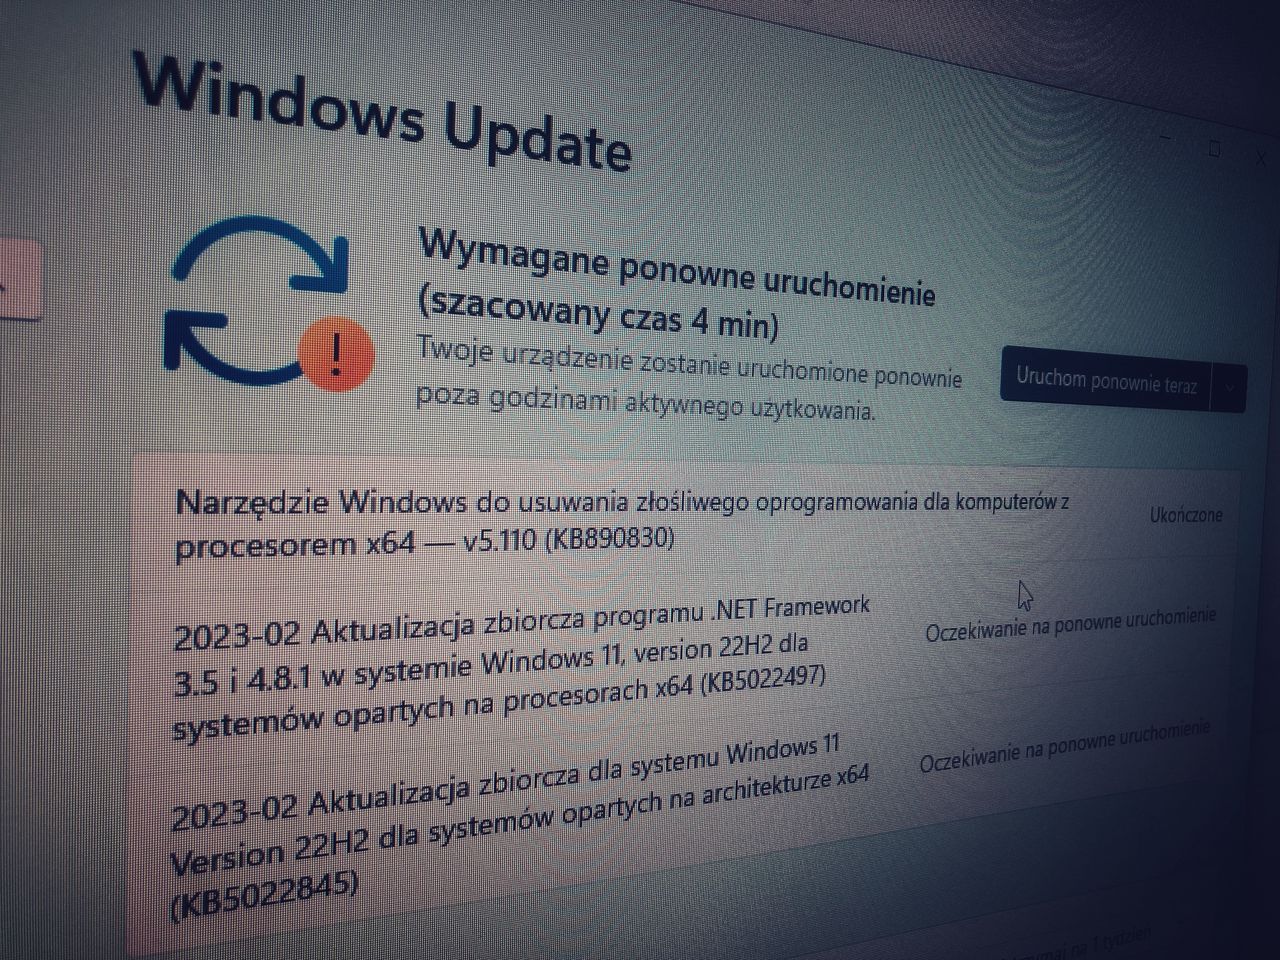 Windows Update: łatkowy wtorek lutego
